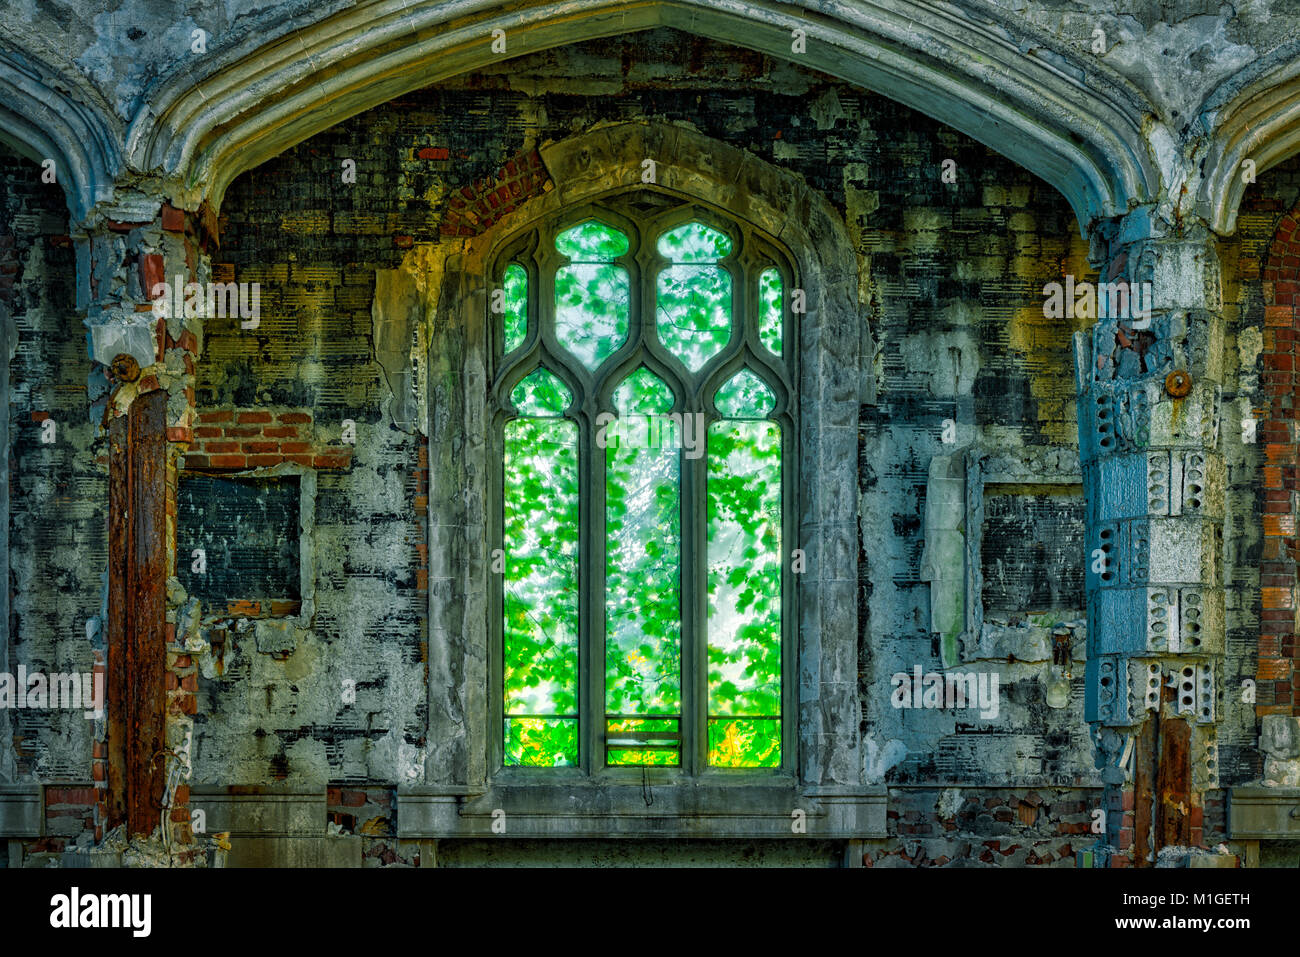 Natürlicher Verfall im Vergleich zu lebendem Grün in einem Fenster der verlassenen St. Agnes Church in Detroit, Michigan, USA Stockfoto